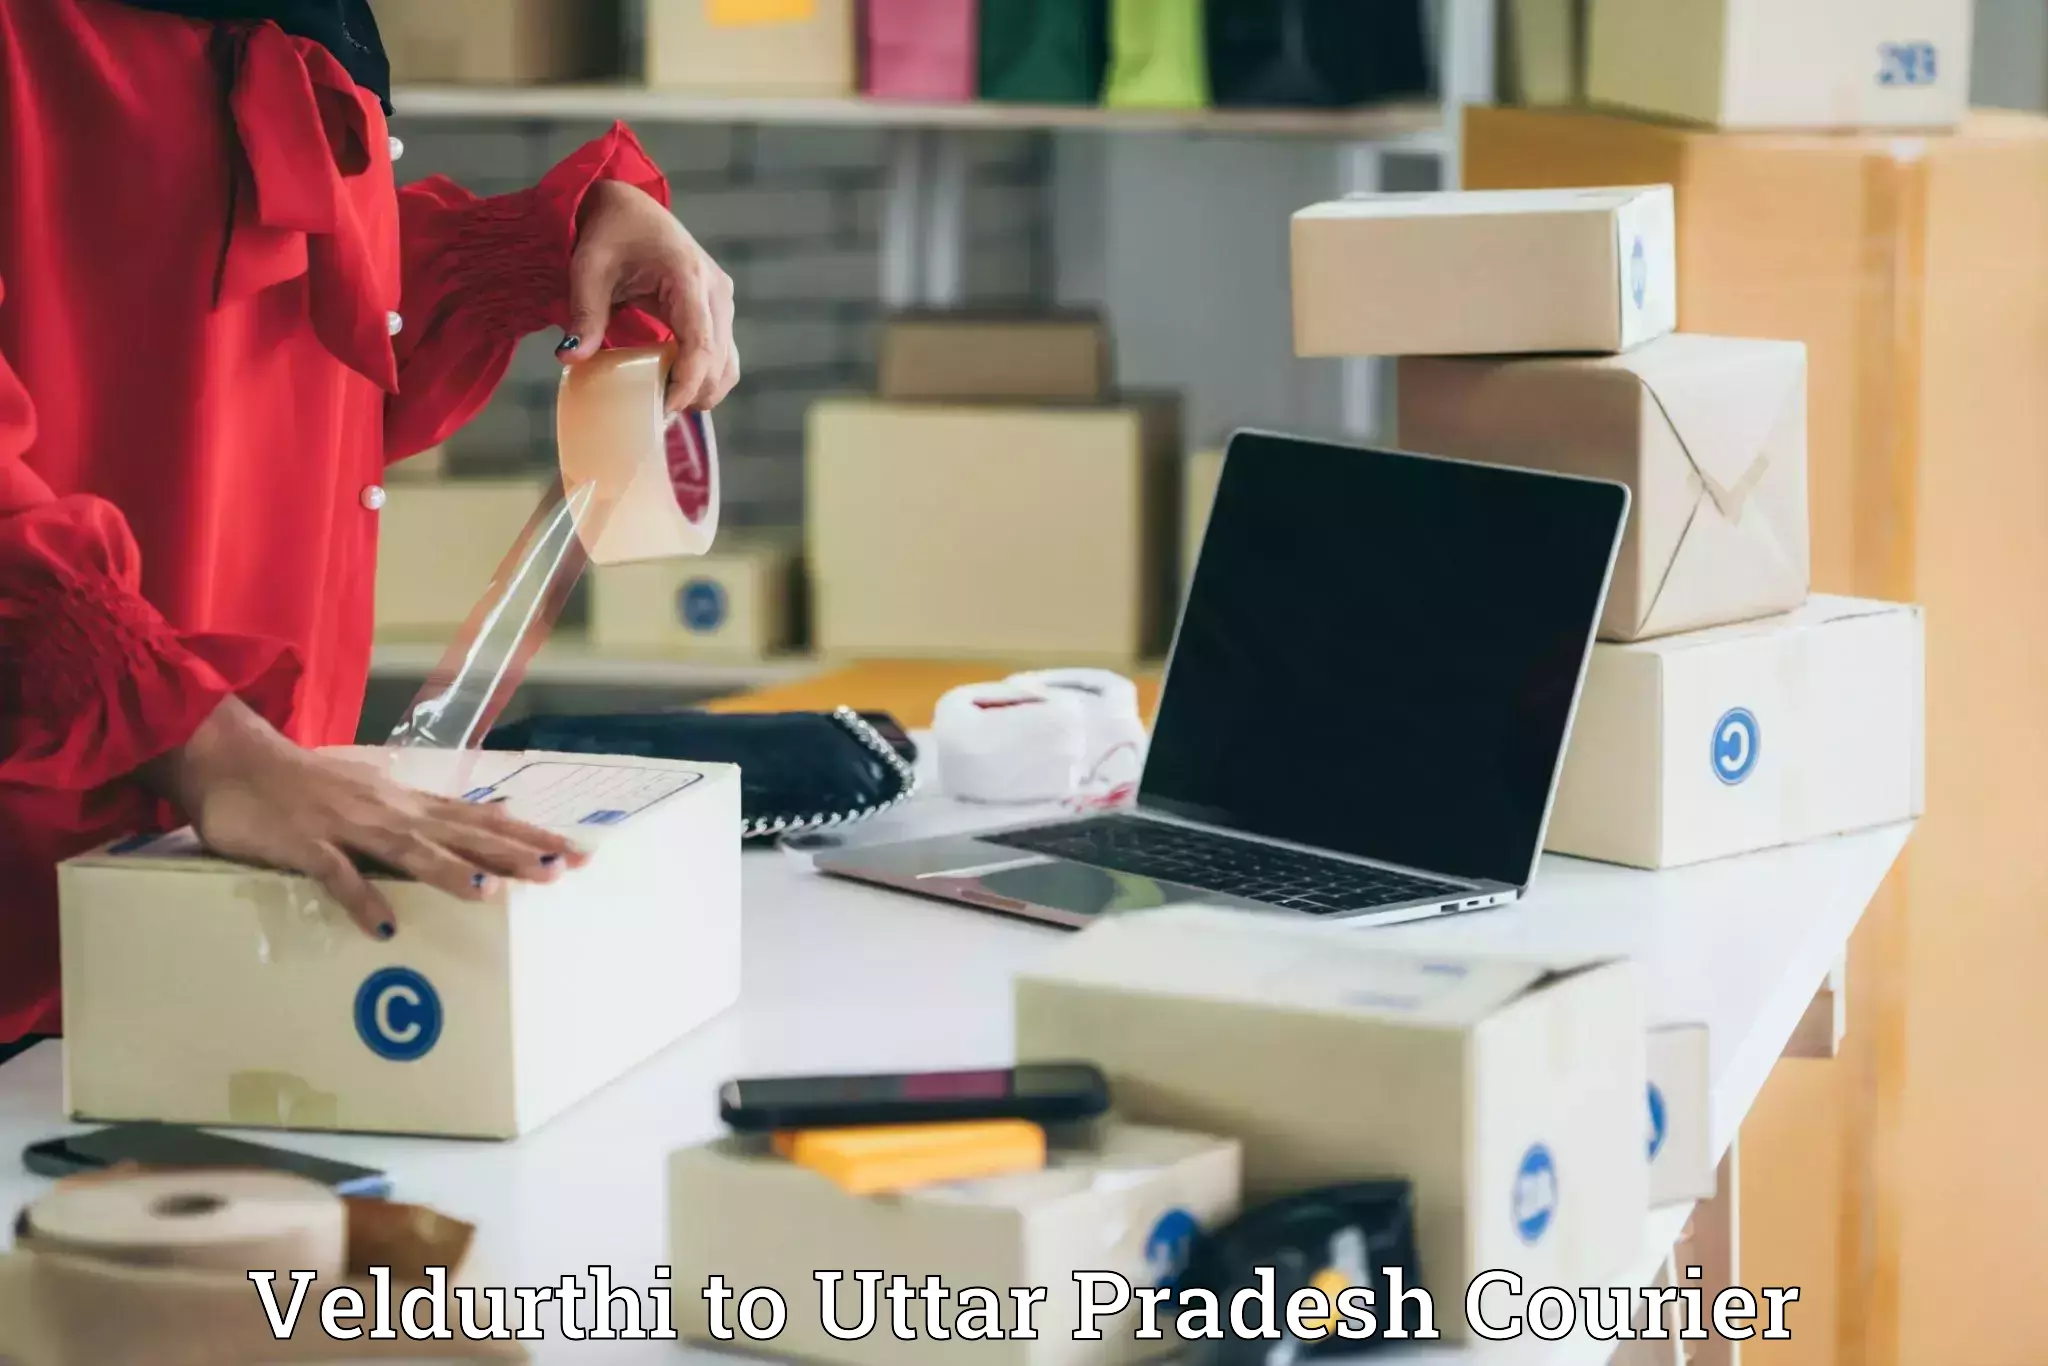 Luggage delivery solutions Veldurthi to Uttar Pradesh